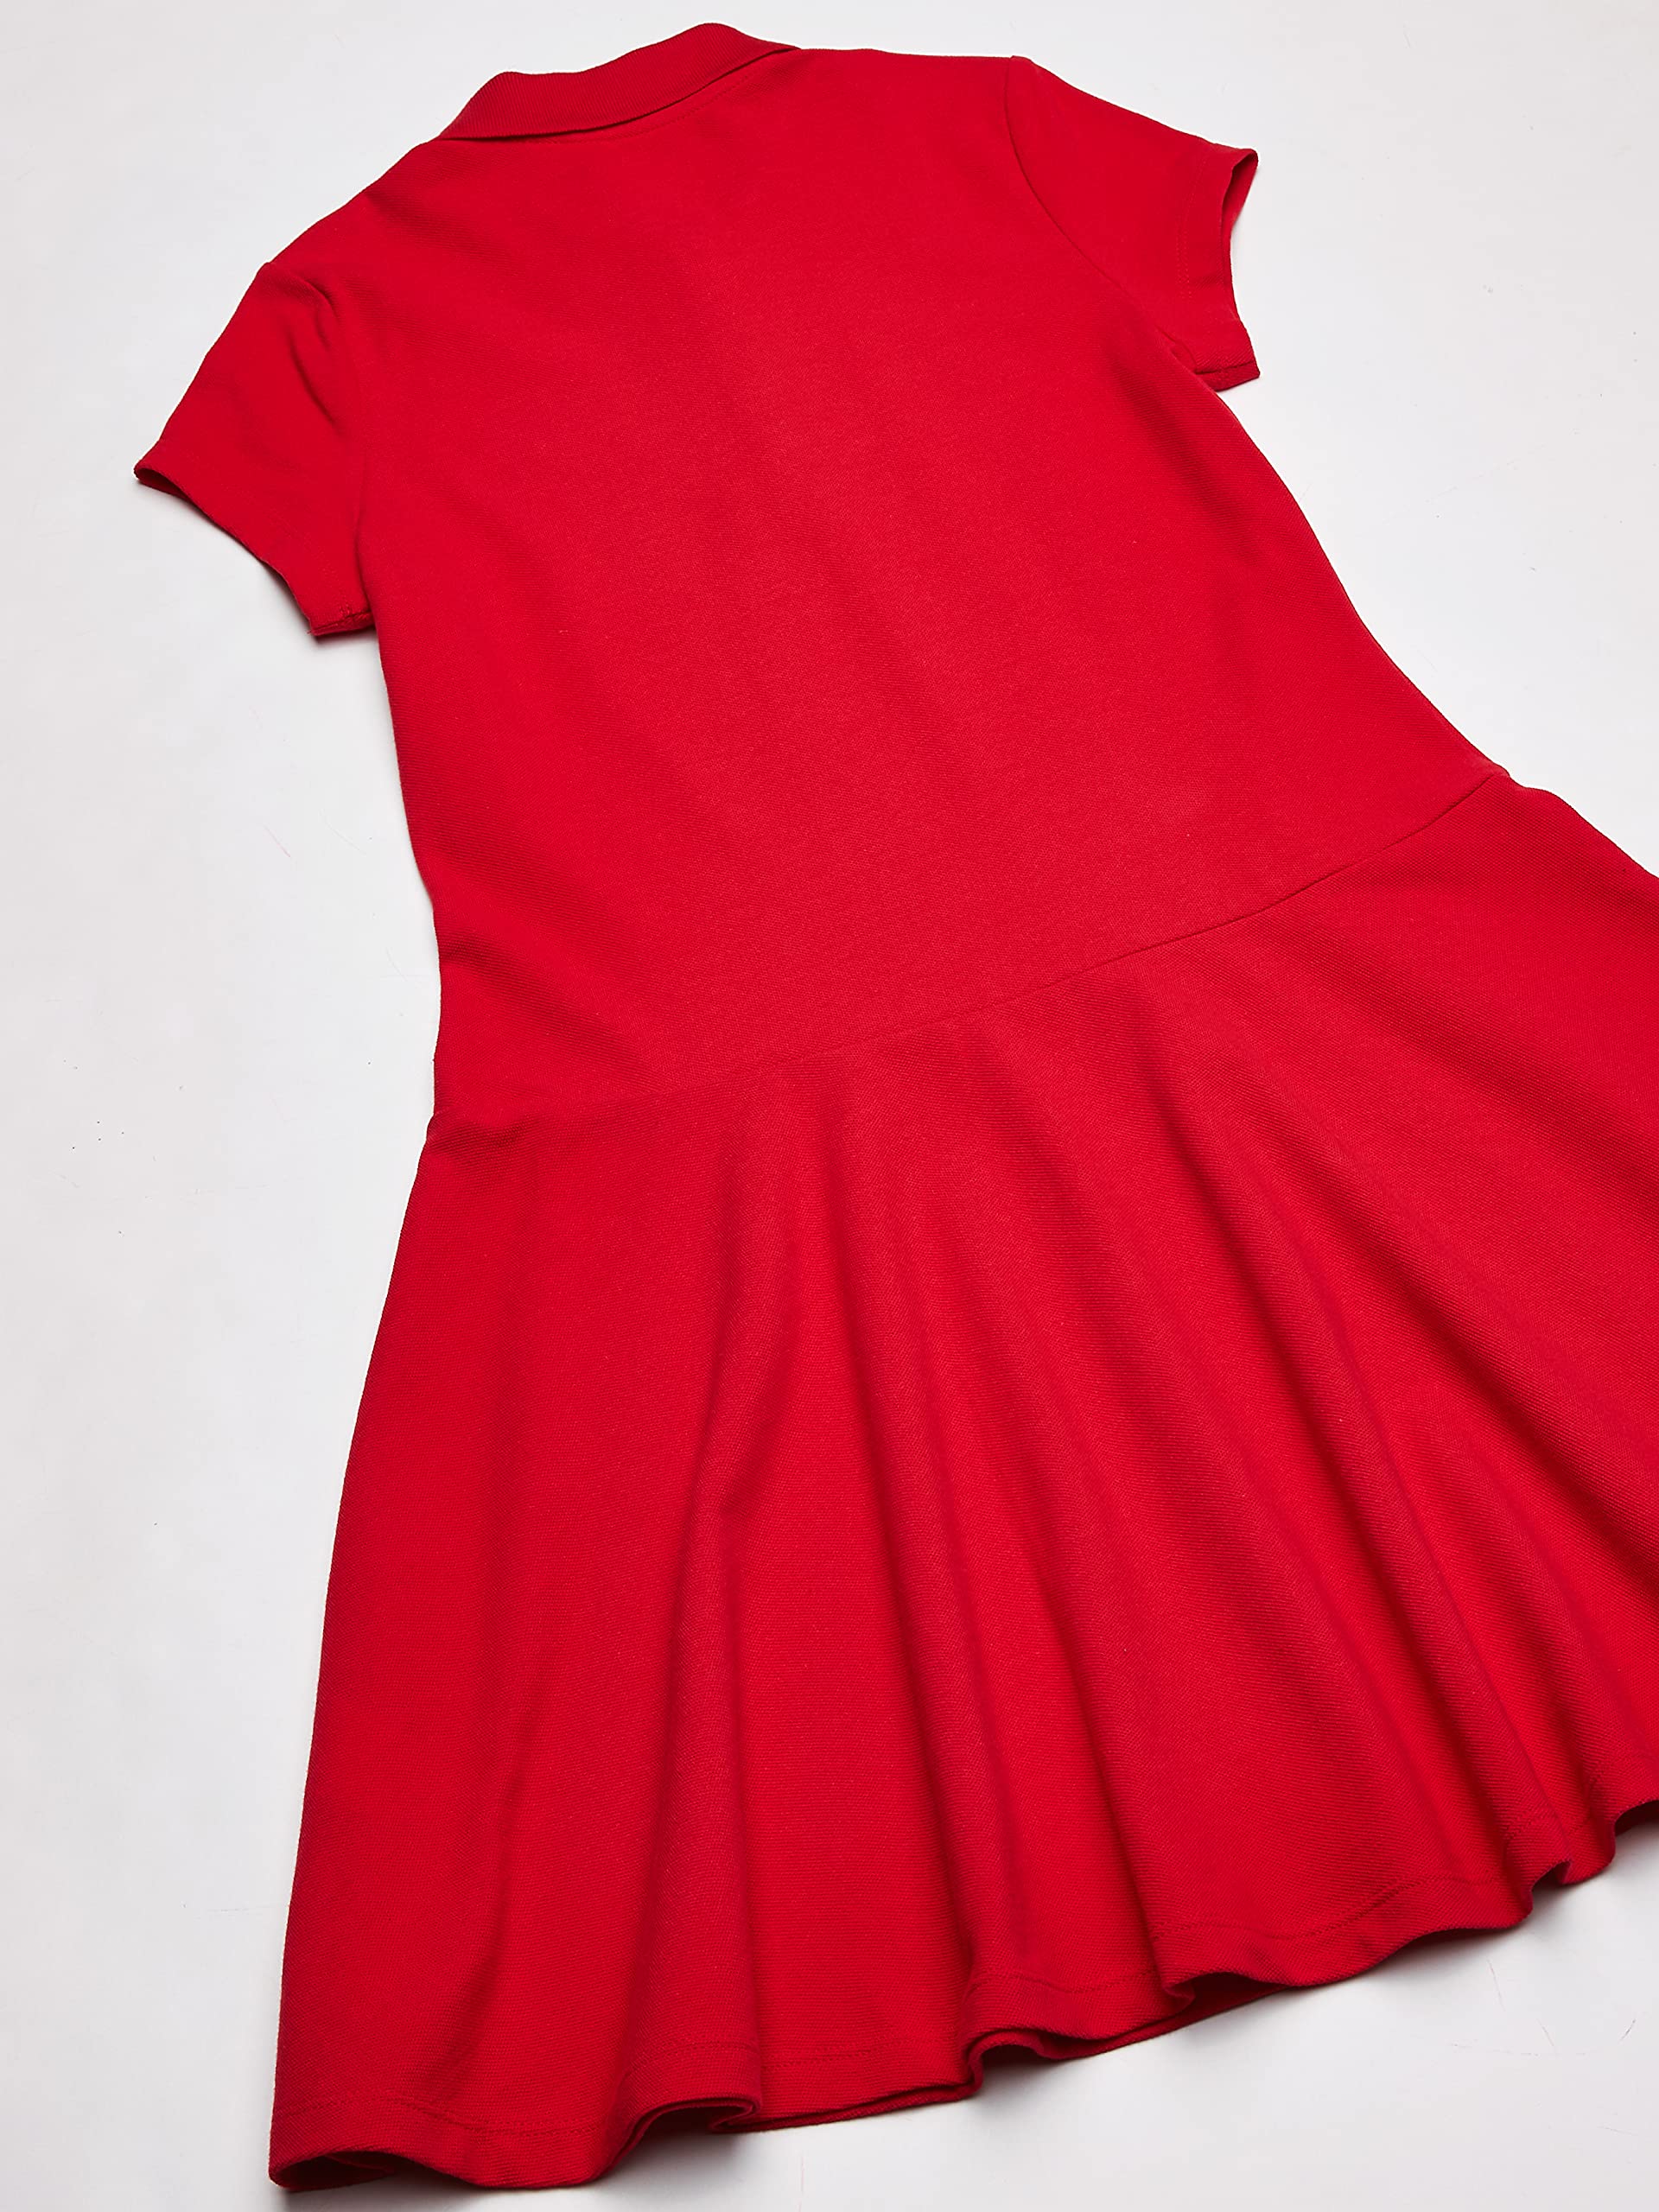 The Children's Place Girls' Short Sleeve Pique Polo Dress, Drop Waist